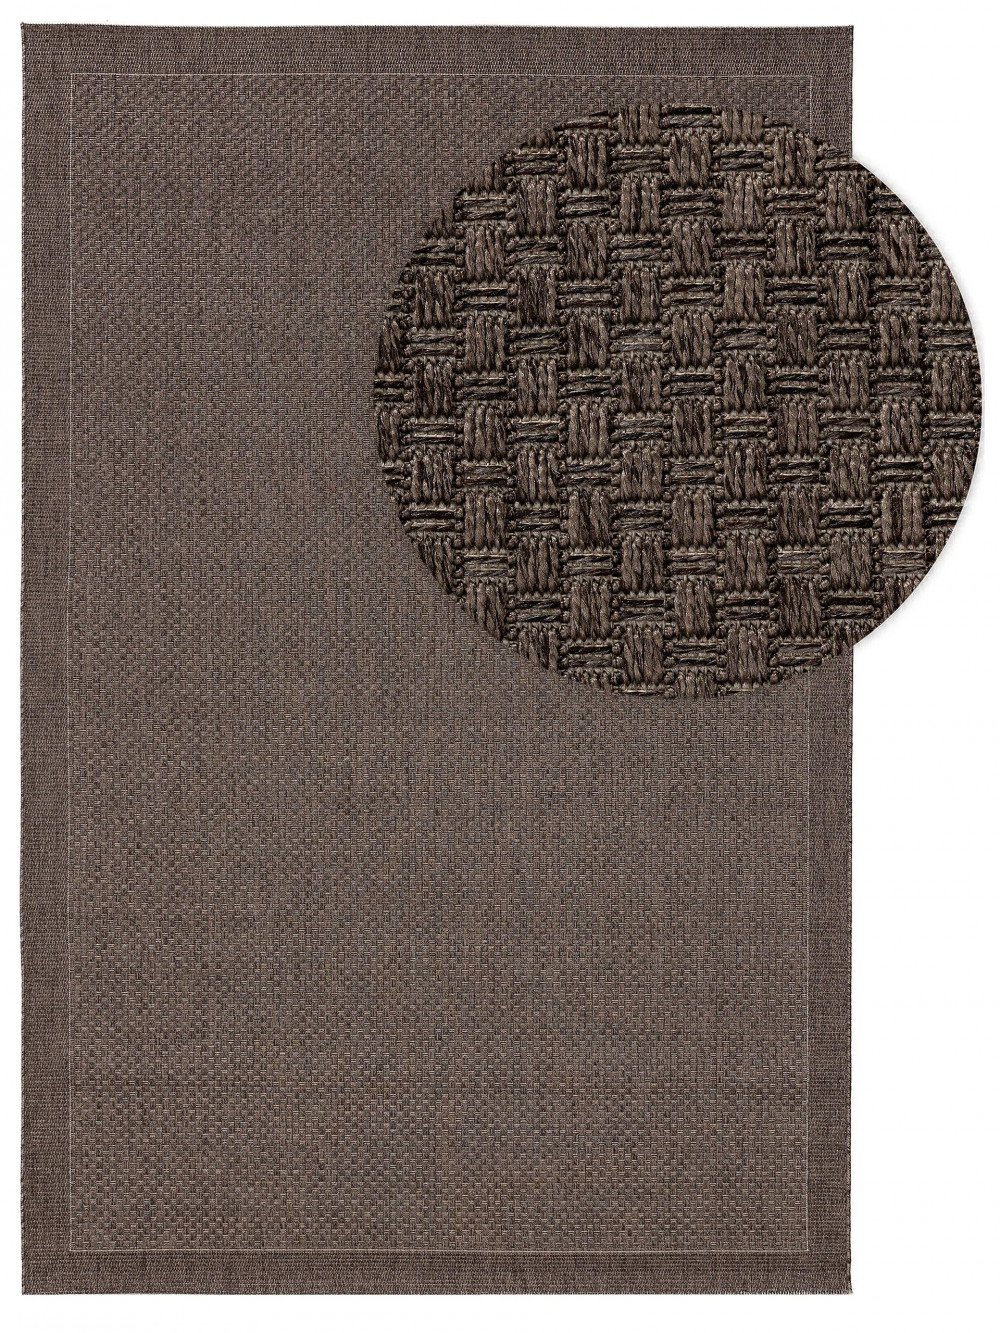 Kül- és beltéri szőnyeg Naoto Grey 160x230 cm